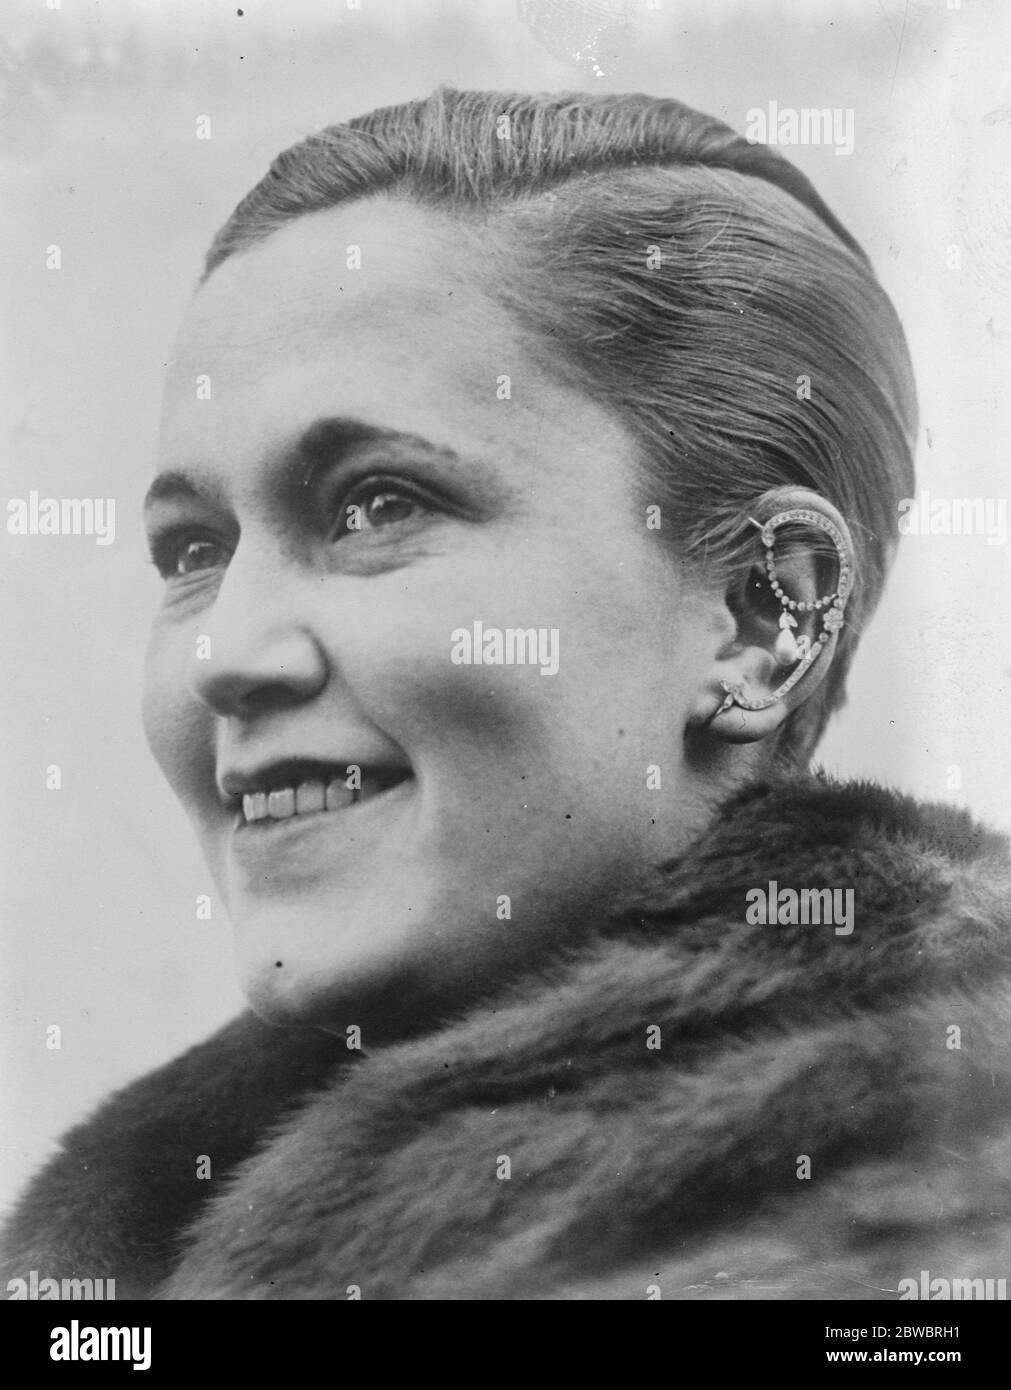 Une nouveauté London Ear ring . Une photographie de Mme Beaumont Alexander , de Londres , montrant un anneau d'oreille très nouveau . 25 novembre 1925 Banque D'Images